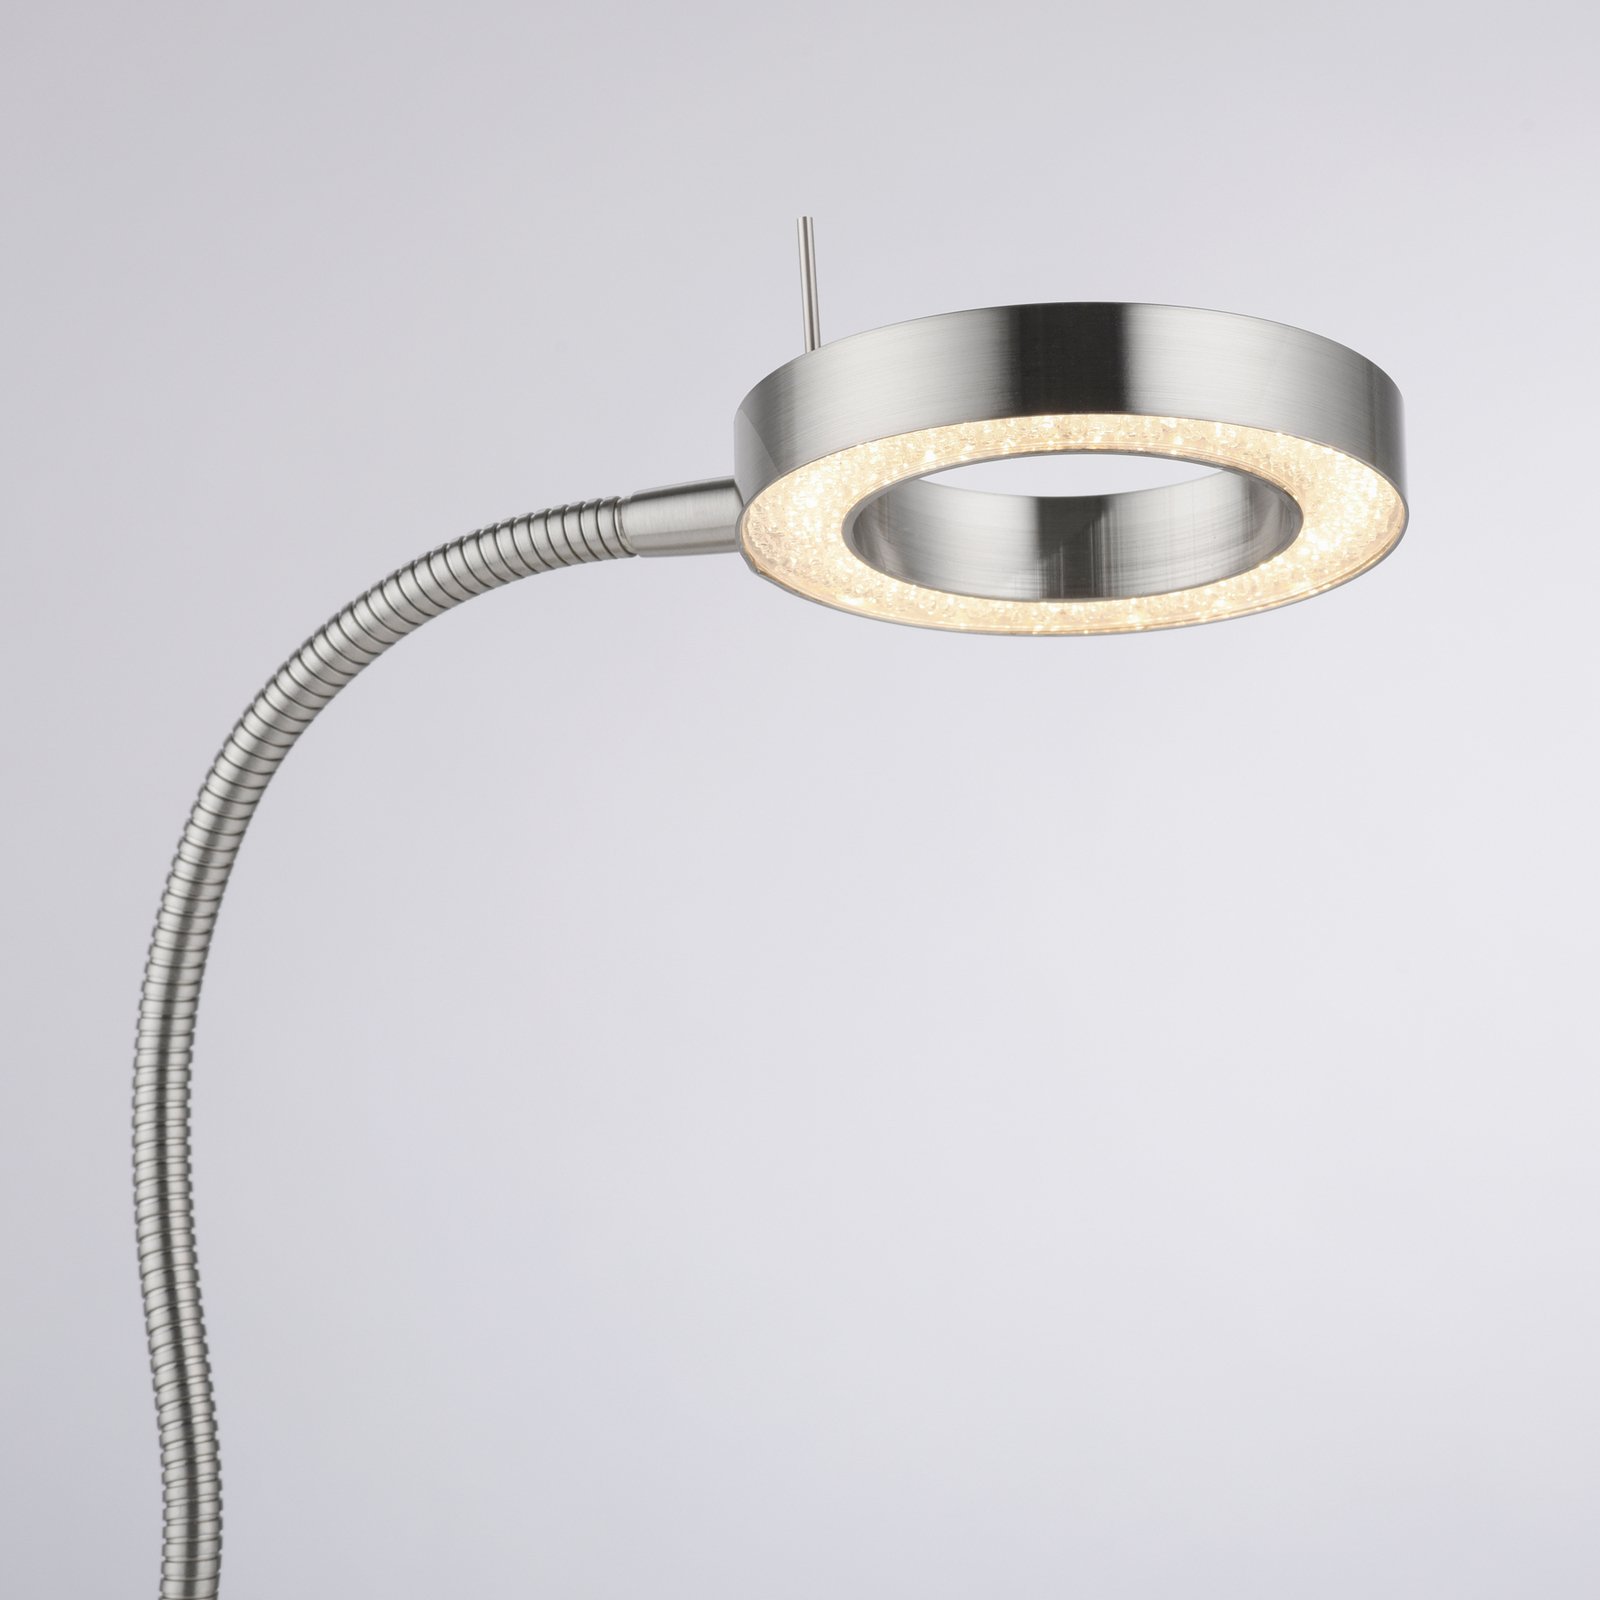 LED-bordslampa Hensko med flexarm